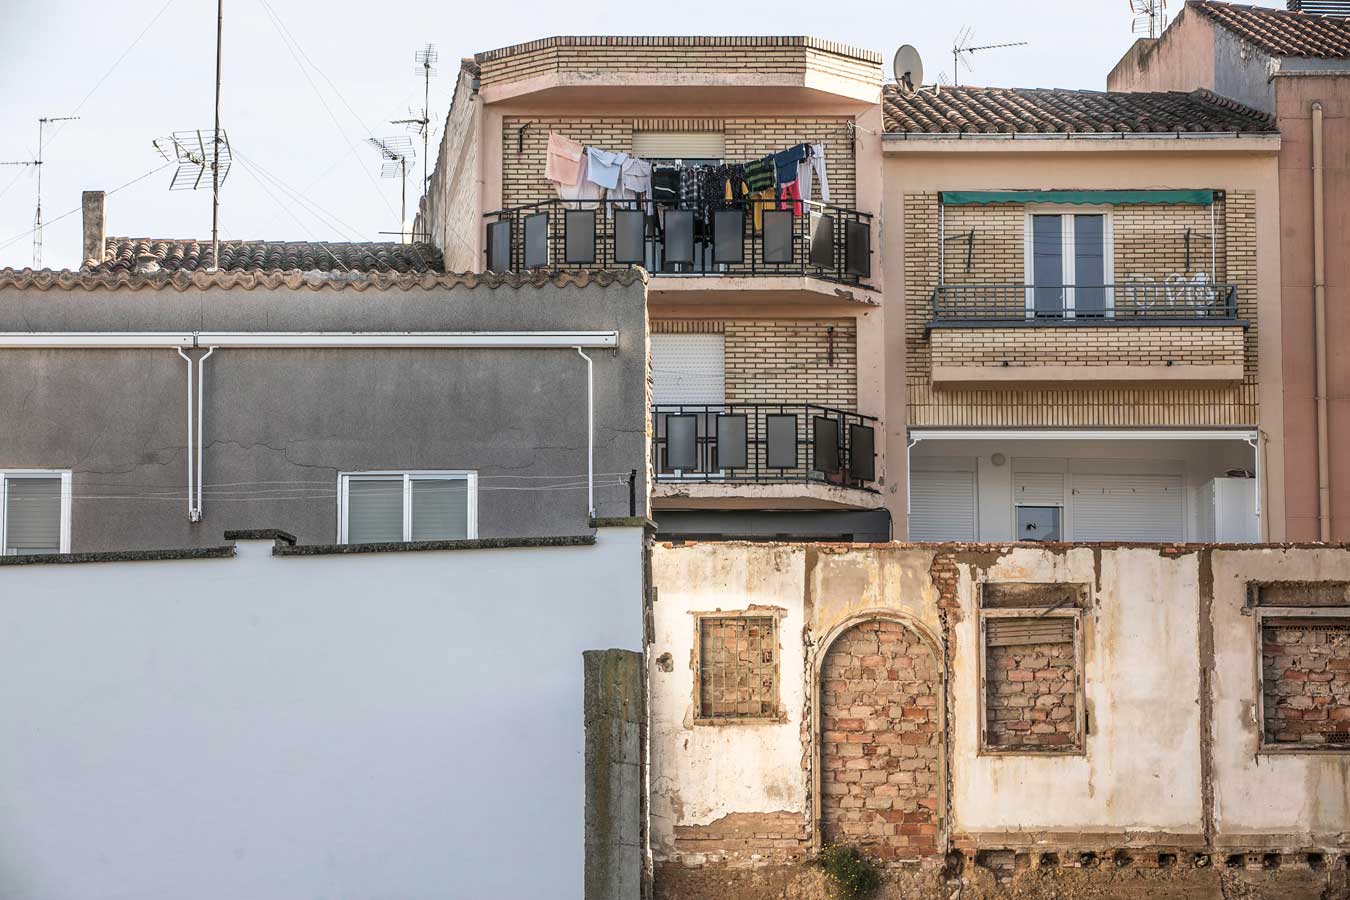 Vista de la fachada de una casa, donde se ve el tendedero lleno de ropa tendida en la terraza